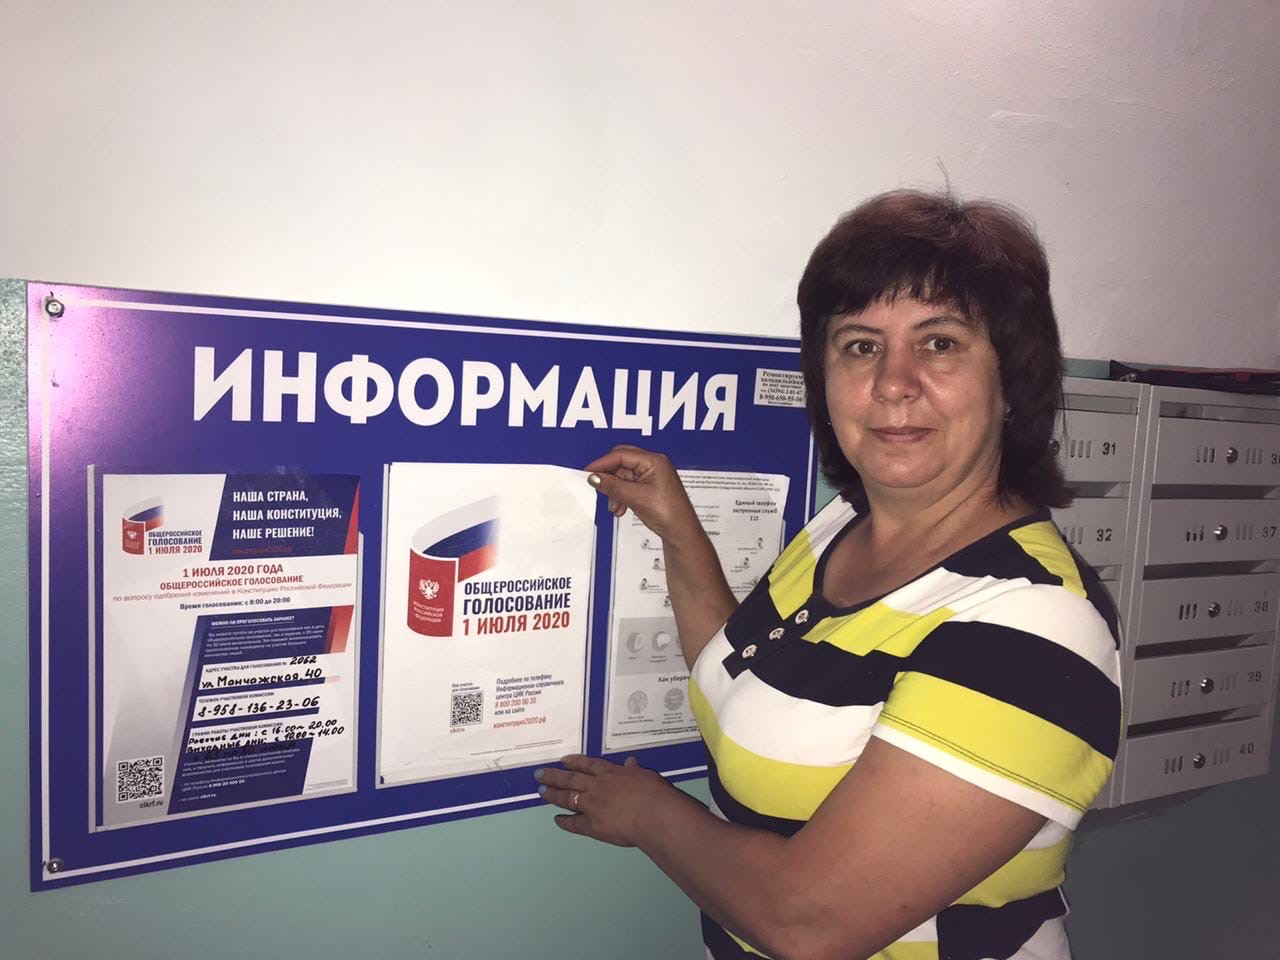 Можно проголосовать 2 раза. Где можно проголосовать. Как можно проголосовать. Участковая избирательная комиссия номер 1 Москва.